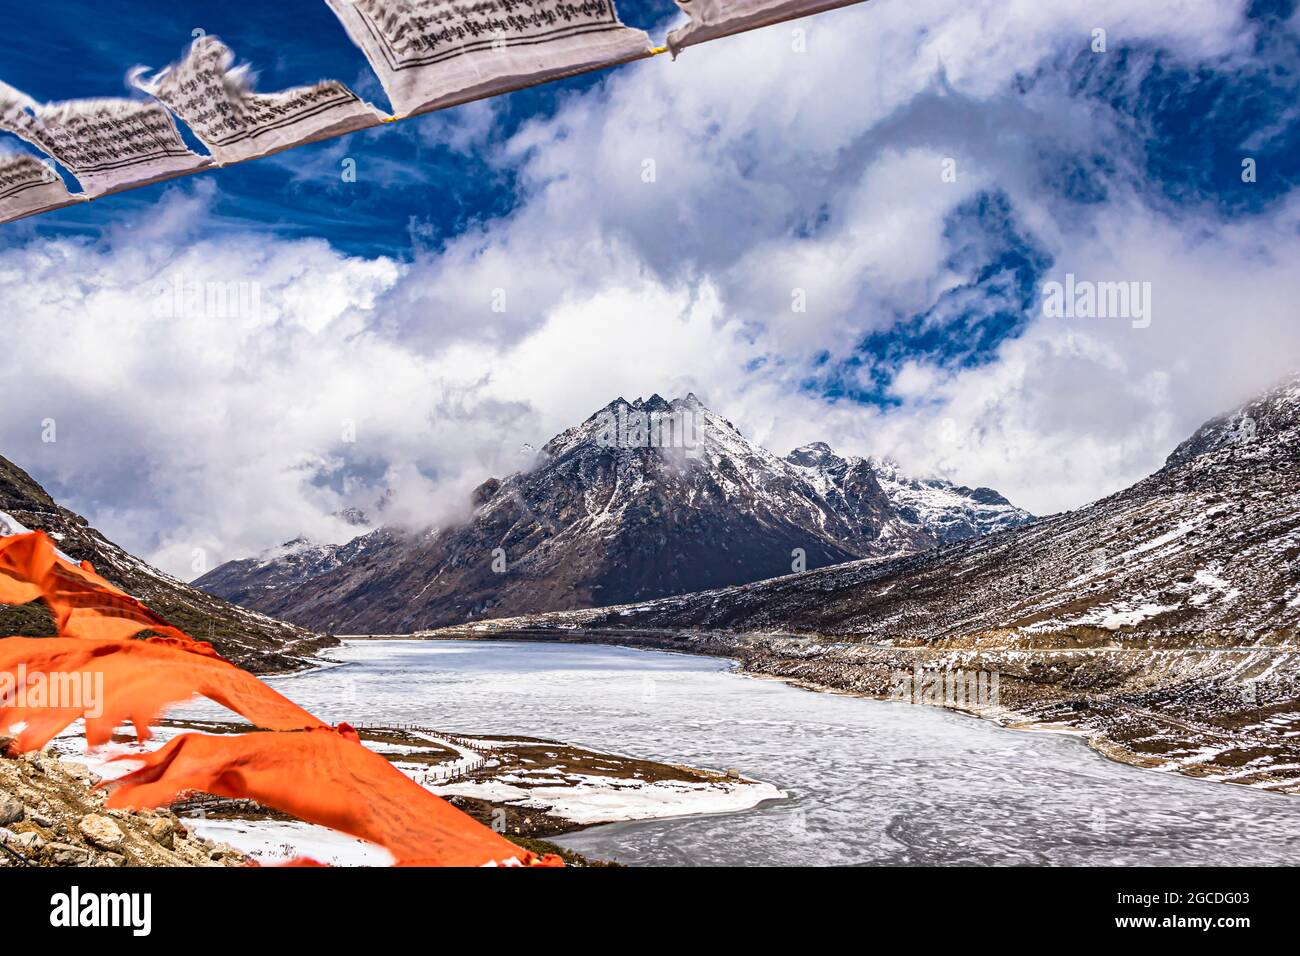 montagna con copertura della neve con cielo drammatico attraverso il blurred buddismo bandiere cornice al giorno l'immagine è presa al passo di sela tawang arunachal pradesh india. Foto Stock